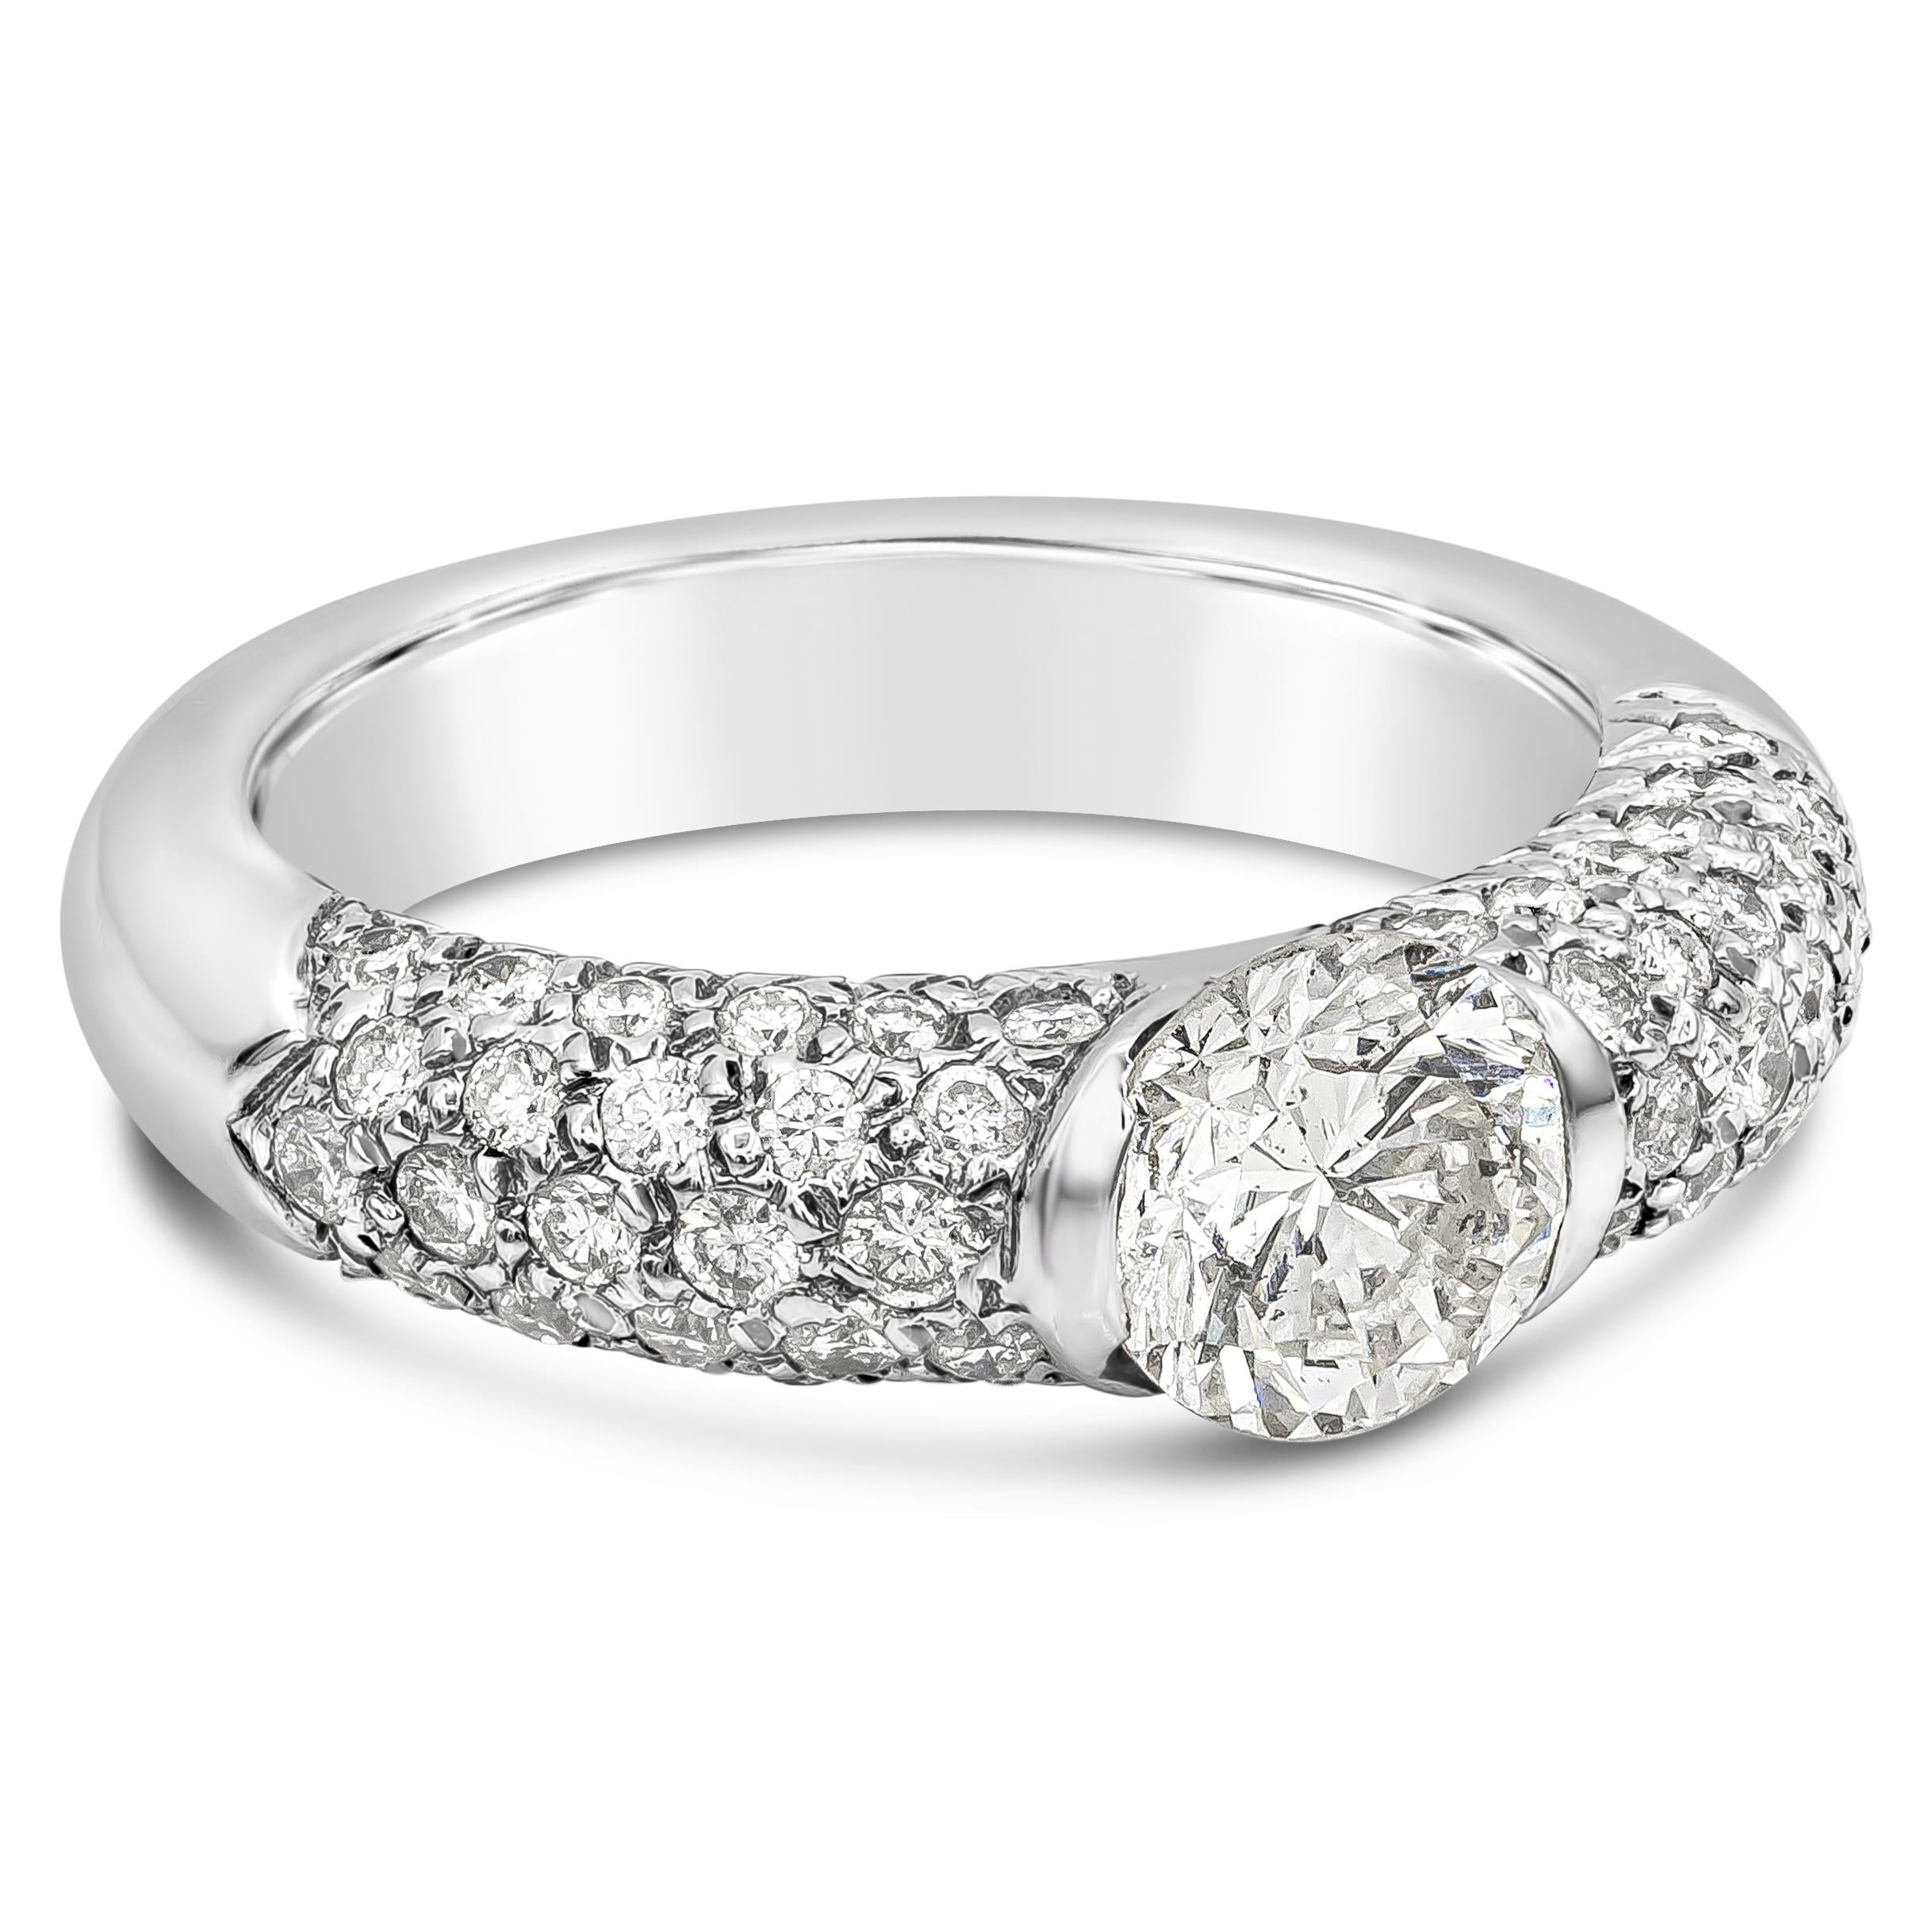 Dieser herrliche Ring hat eine schöne einzigartige halbe Lünette Design mit einem 1,35 Karat brillanten runden Diamanten Mittelstein, K-L Farbe, SI2 in der Klarheit. Akzentuiert durch runde Brillanten auf jeder Seite mit einem Gesamtgewicht von 1,04